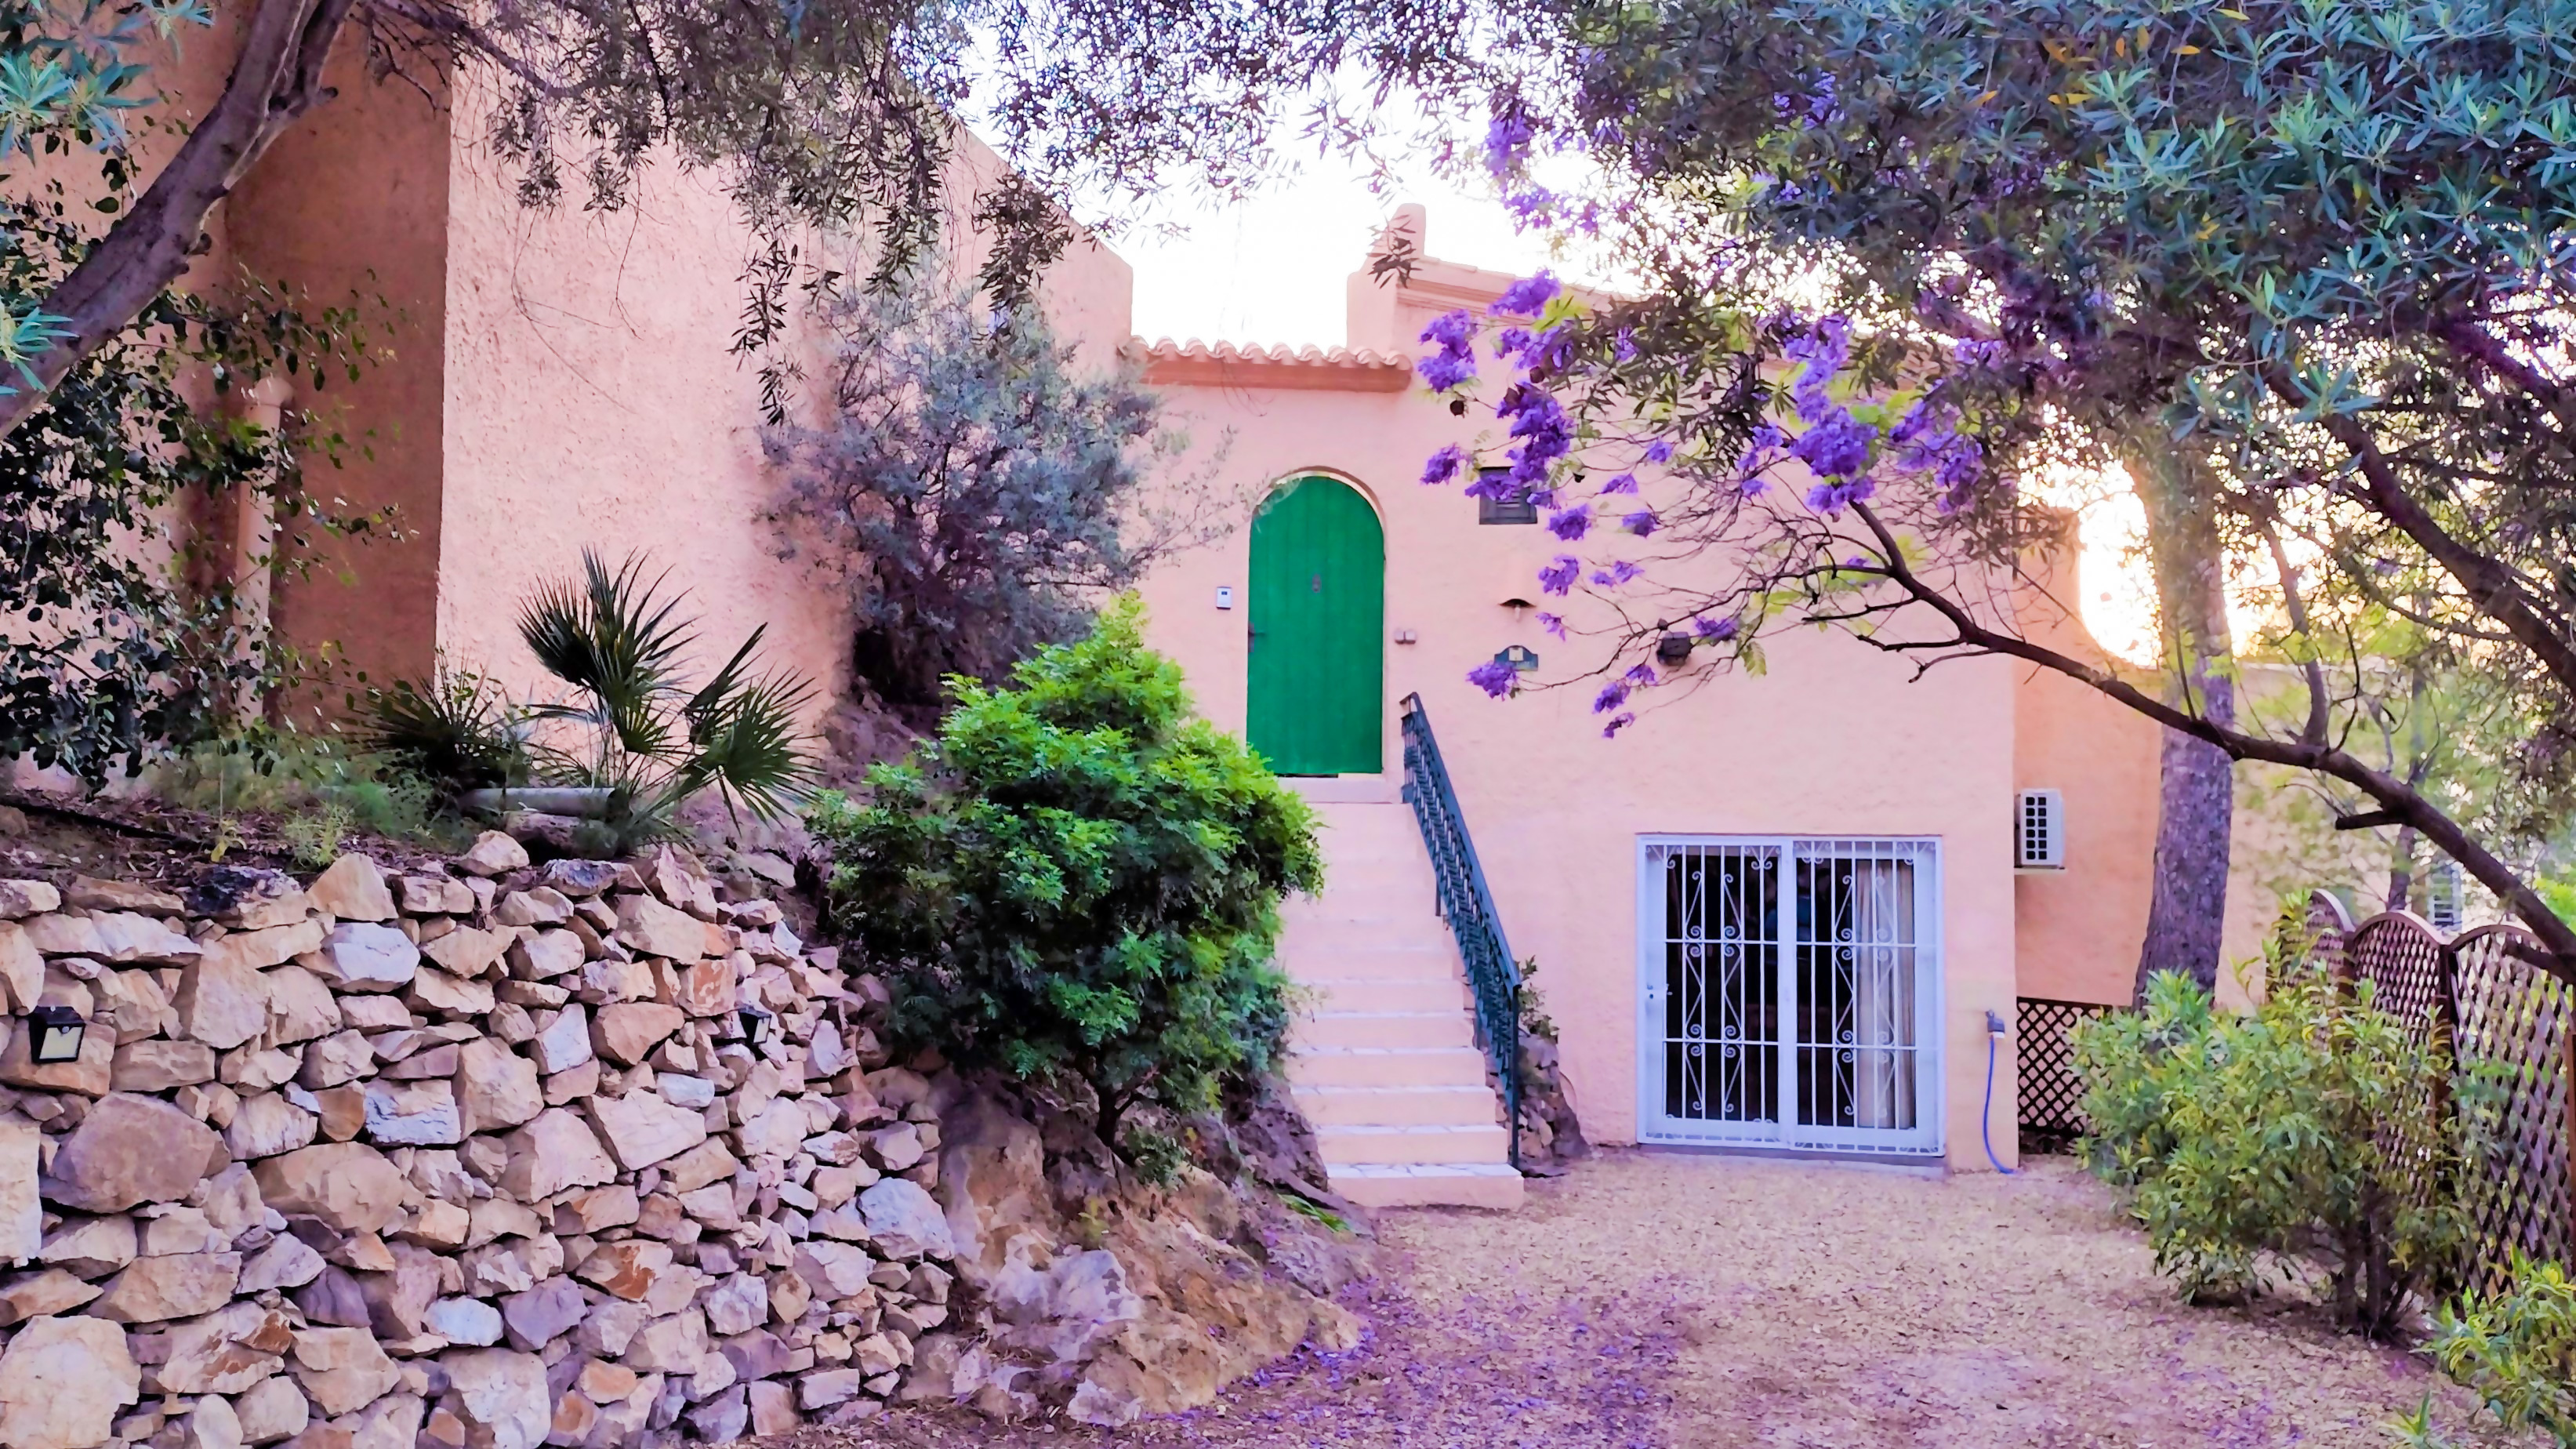 Fantástico alojamiento con espacio para divertirse: Villa en alquiler en La Fuente Del Royo, Almería